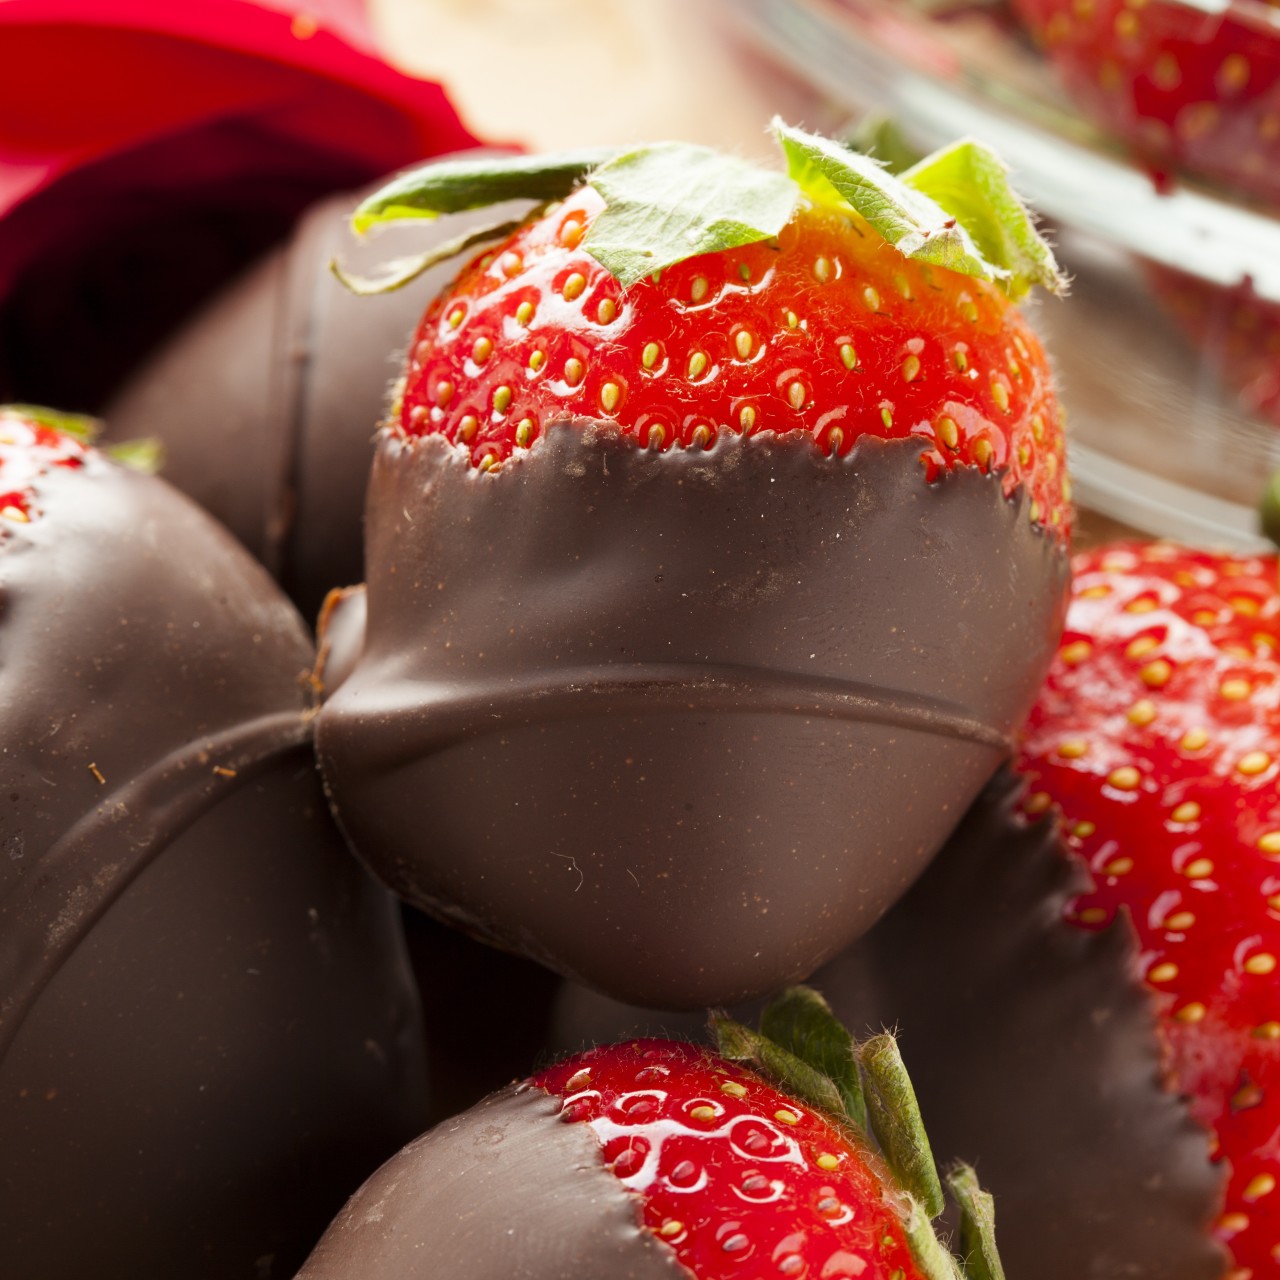 Chocolate covered strawberries uk